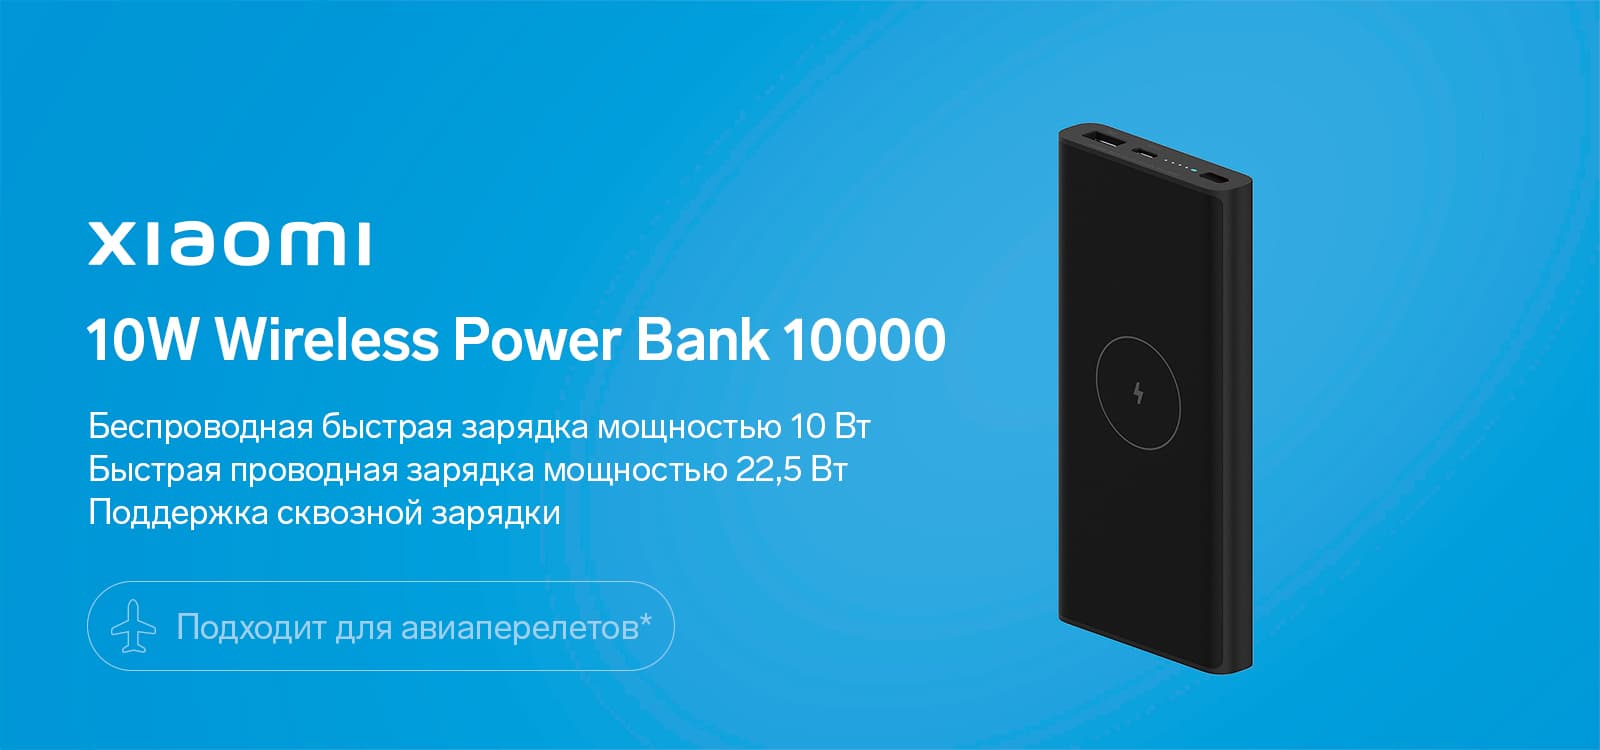   Xiaomi 10W Wireless Power Bank 10000